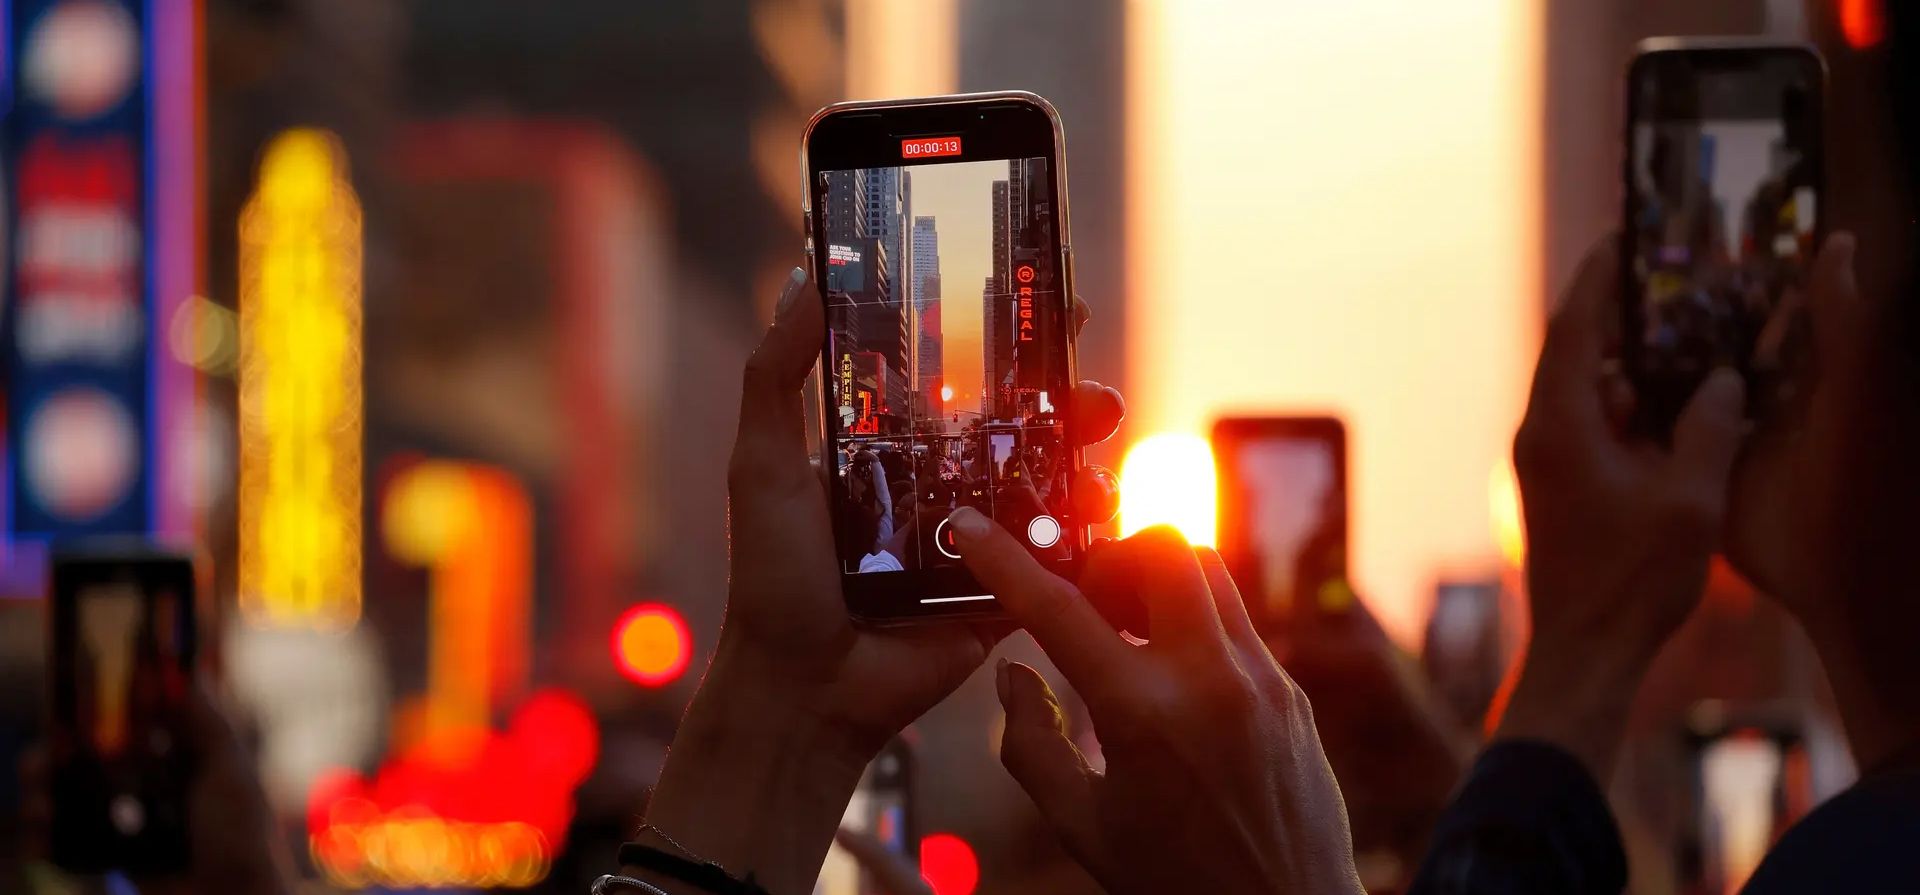 Los teléfonos con cámara se mantienen en alto en la calle 42 mientras la ciudad está bañada por luz dorada. Fotografía: Gary Hershorn/Getty Images